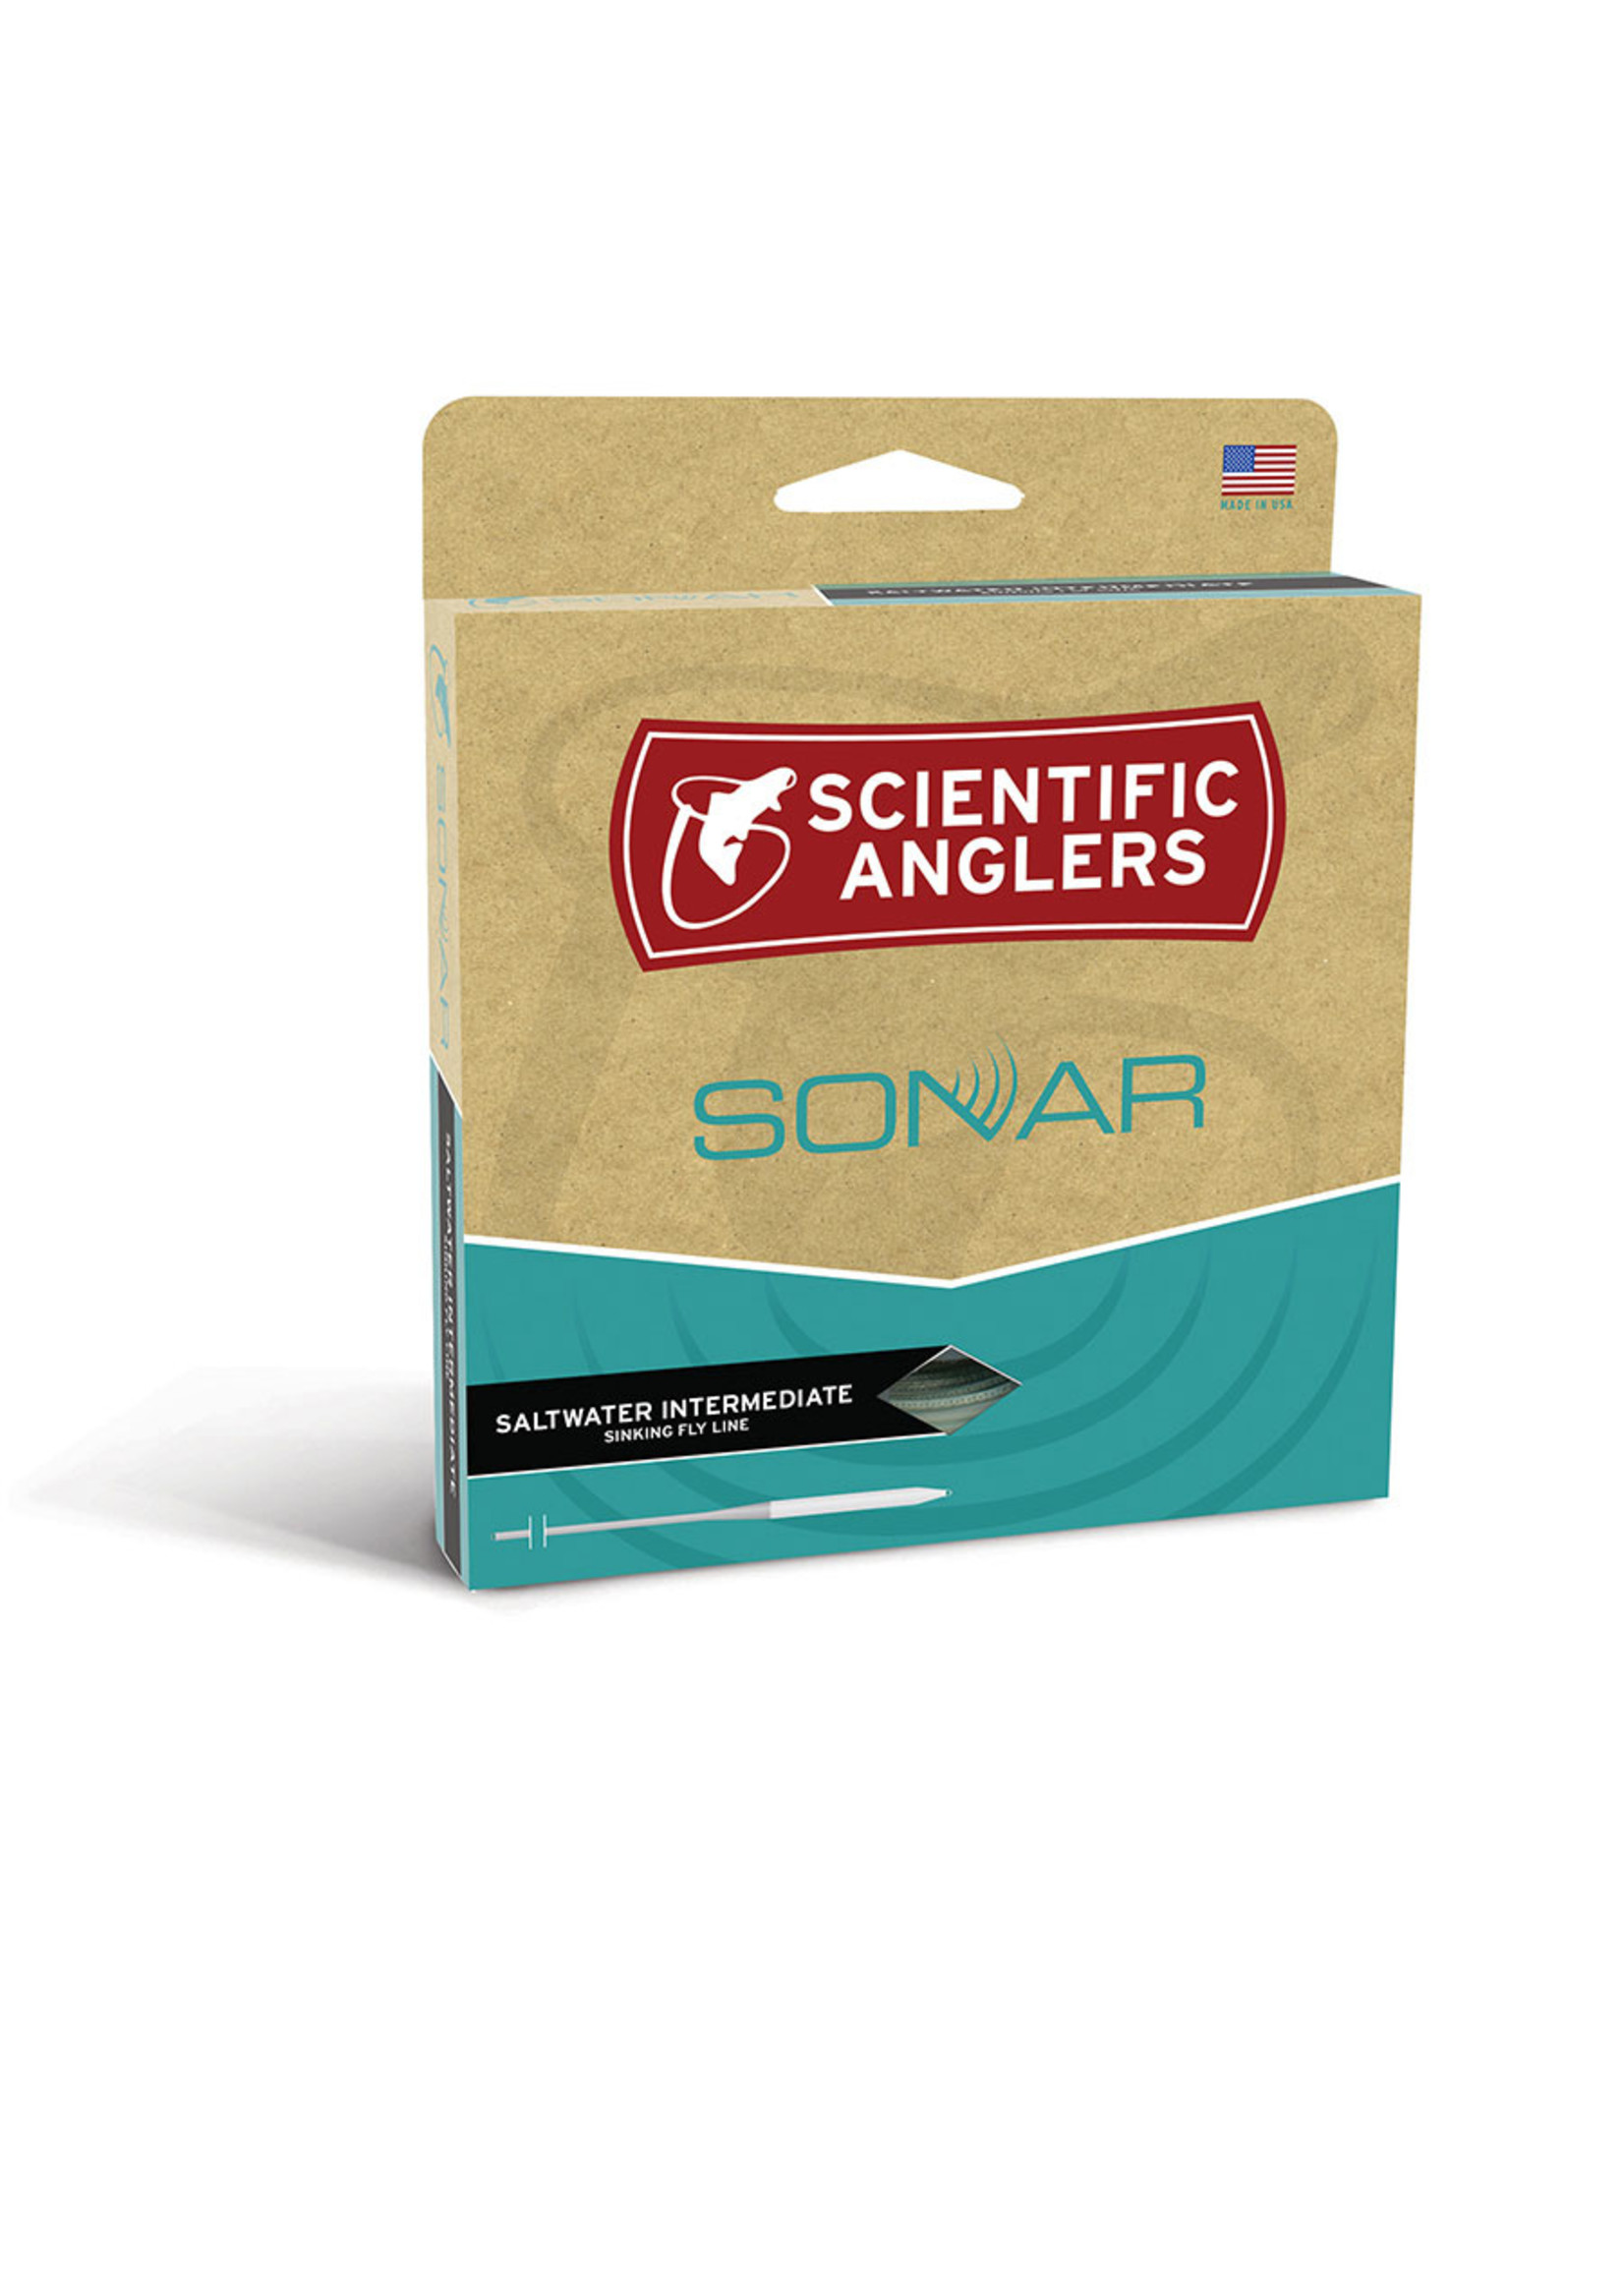 Scientific Anglers Scientific Anglers Sonar Saltwater Intermediate